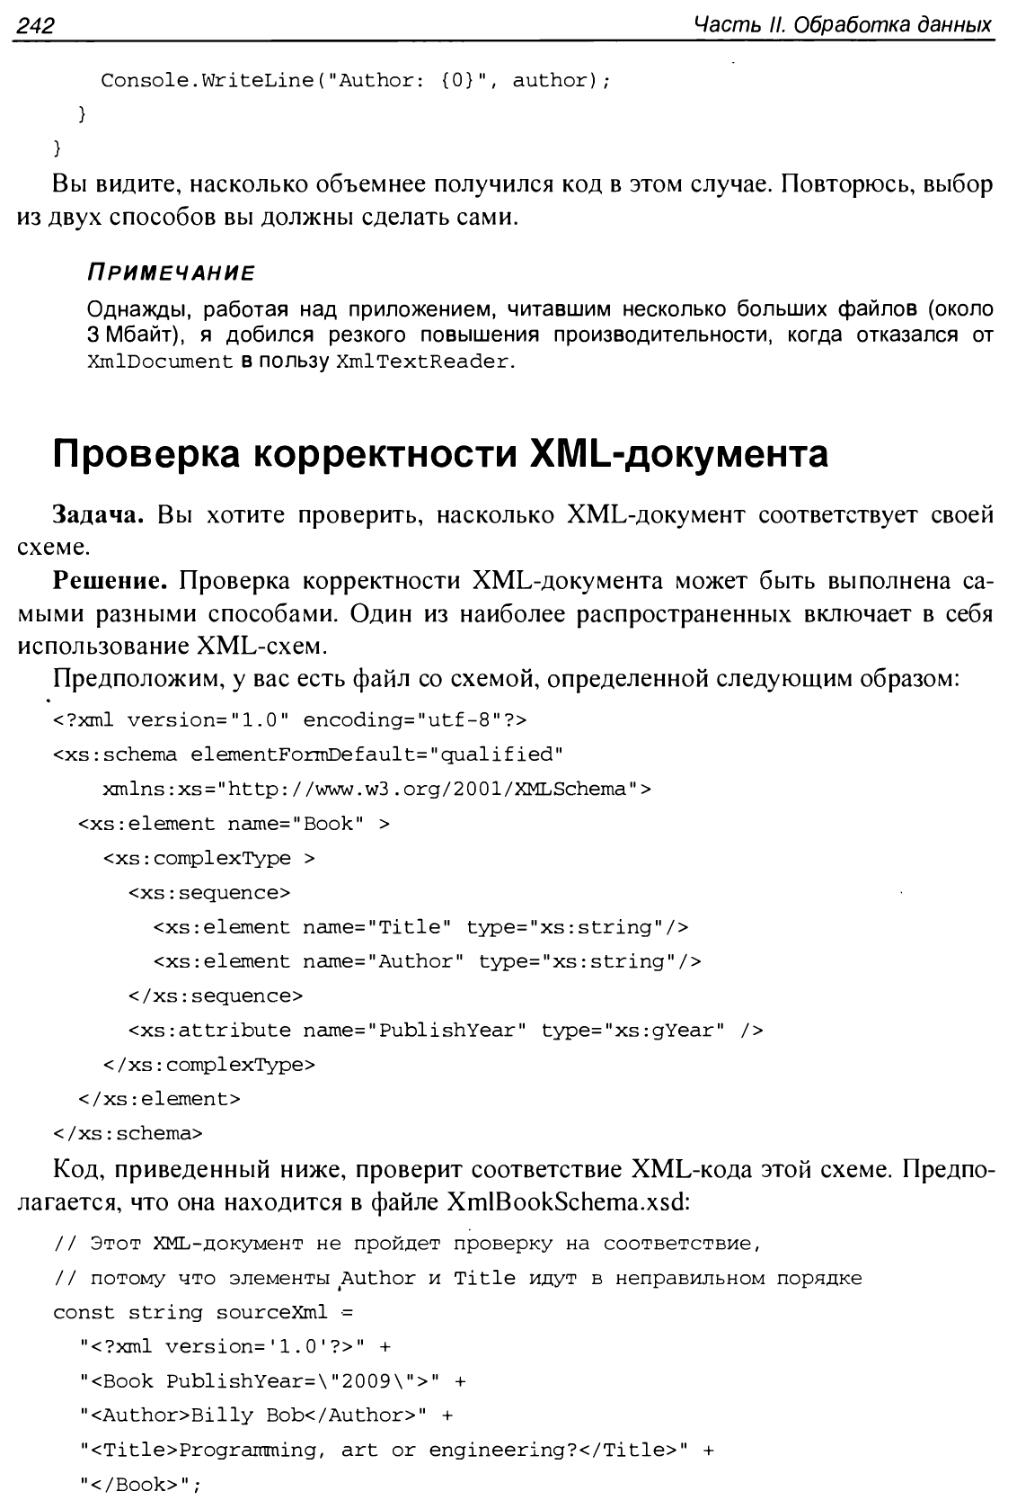 Проверка корректности XML-документа